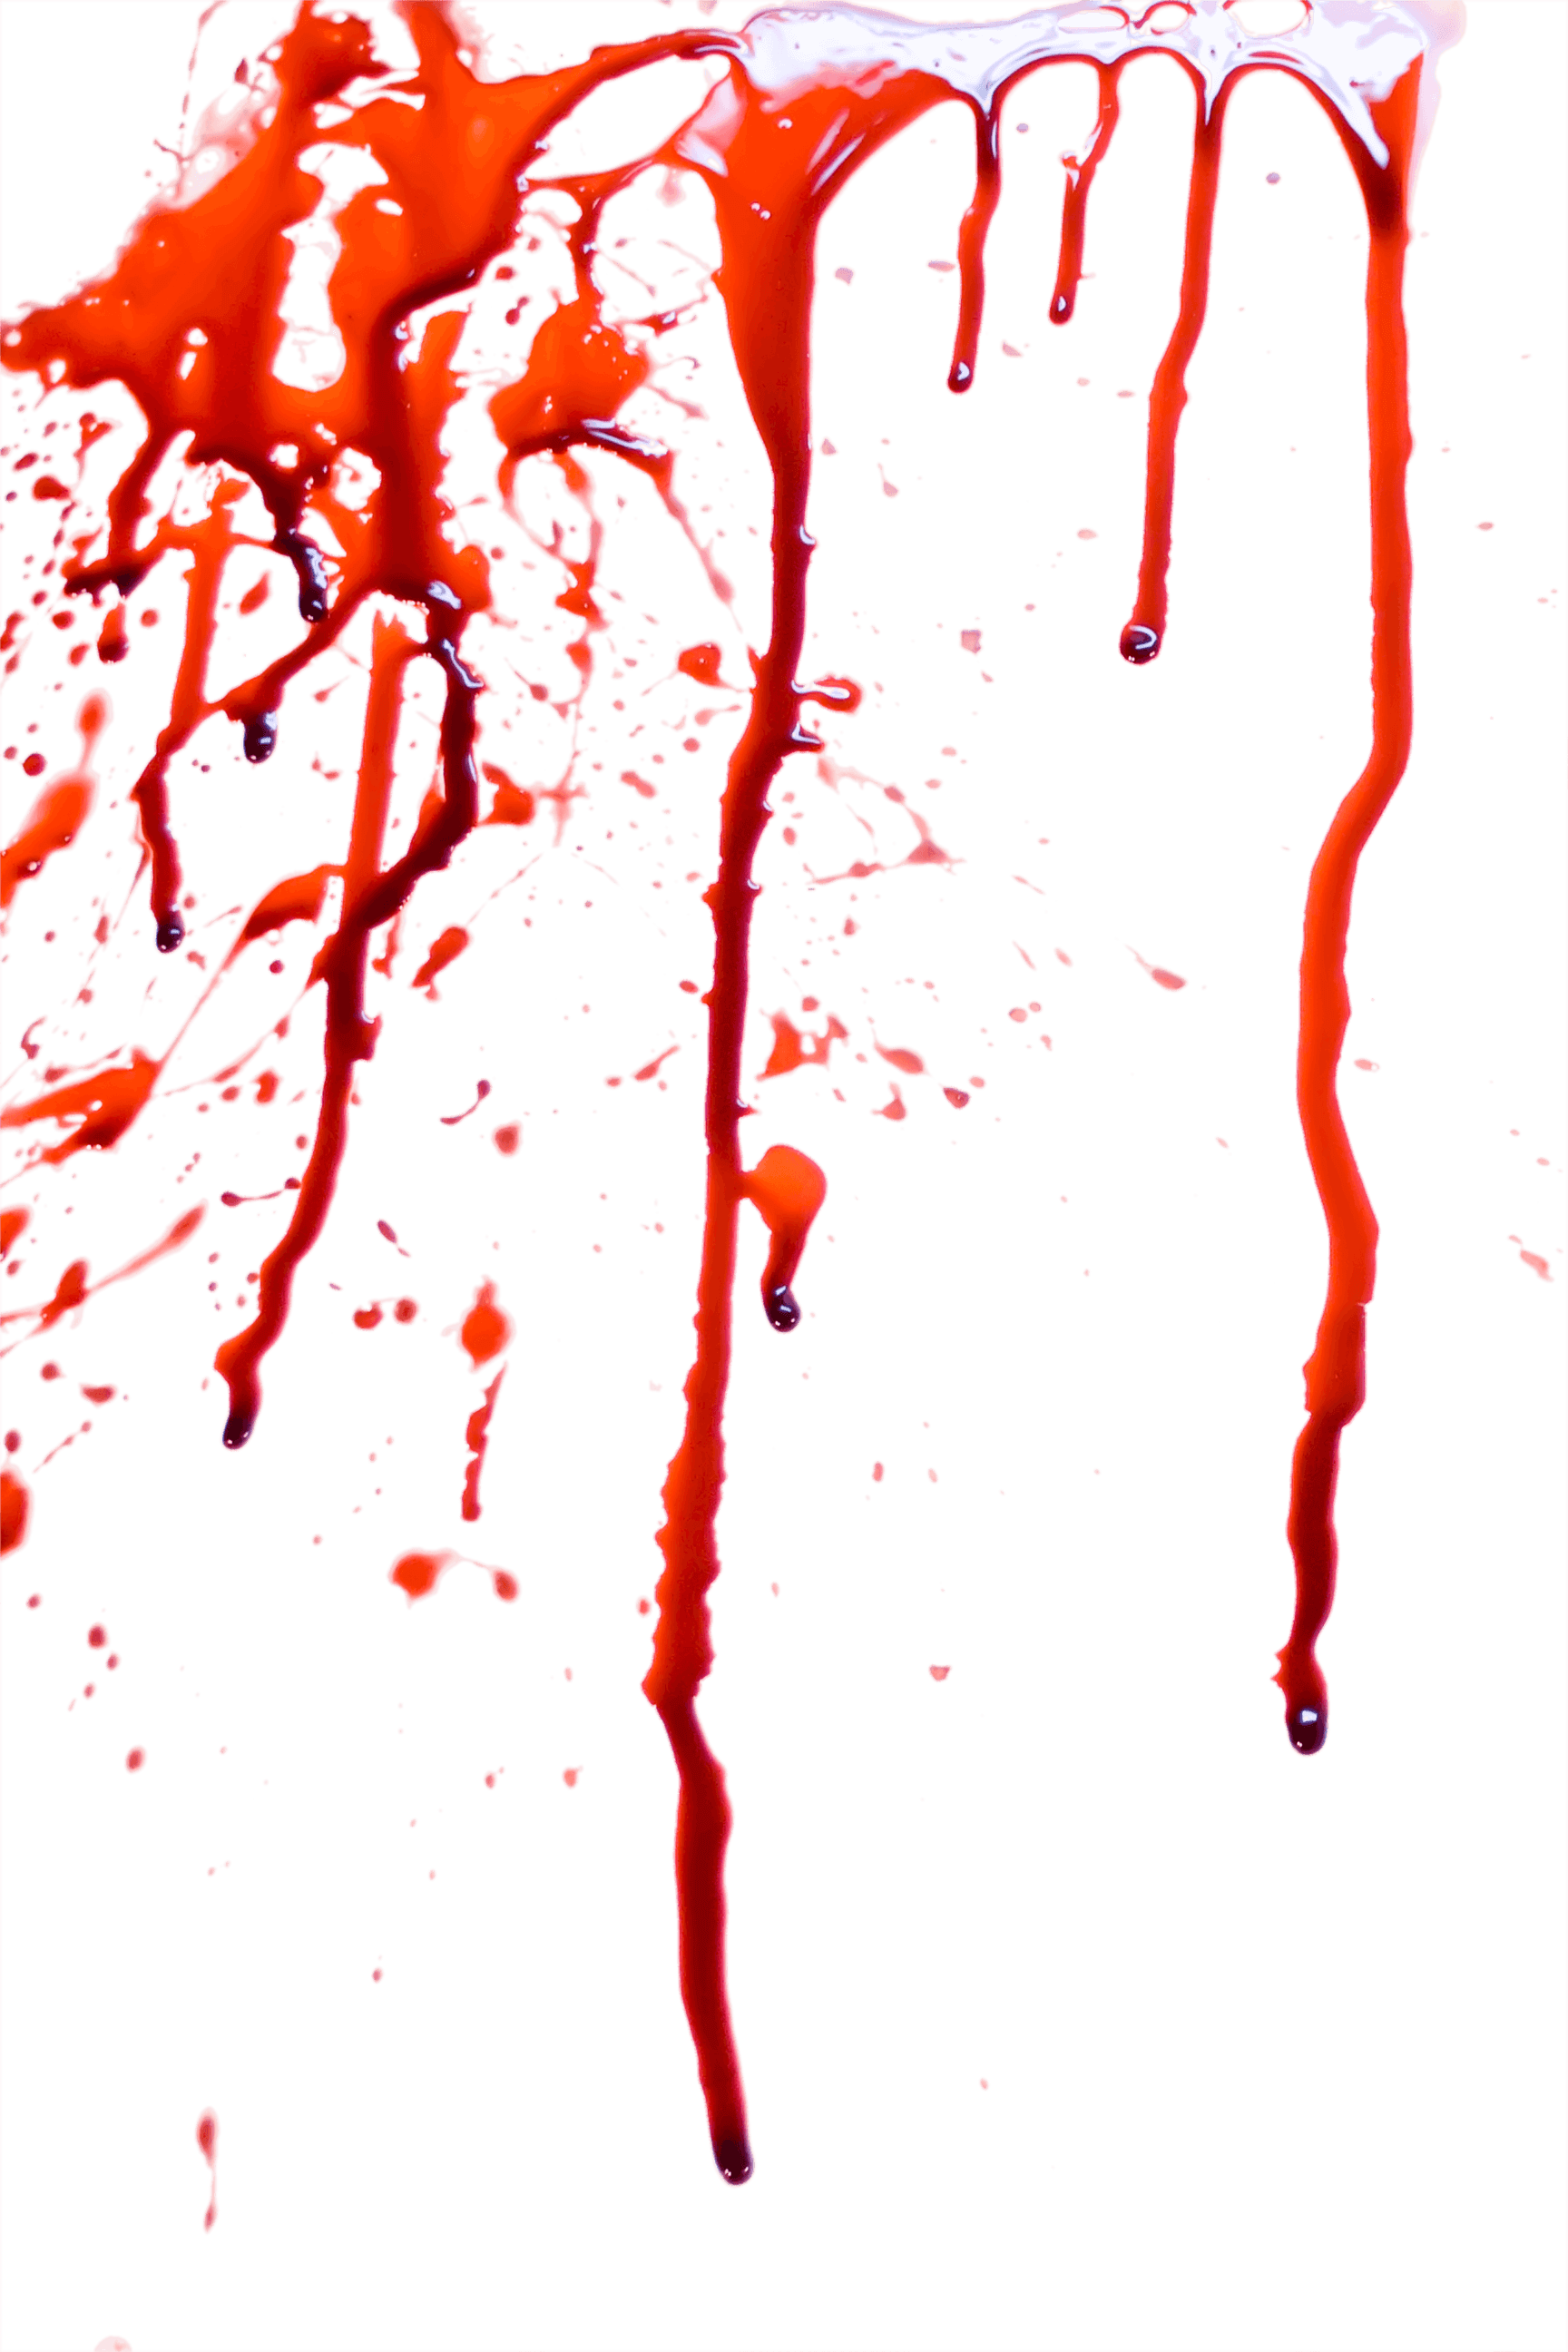 Galeri Gambar Blood Splatter Png, Halaman ke-8.